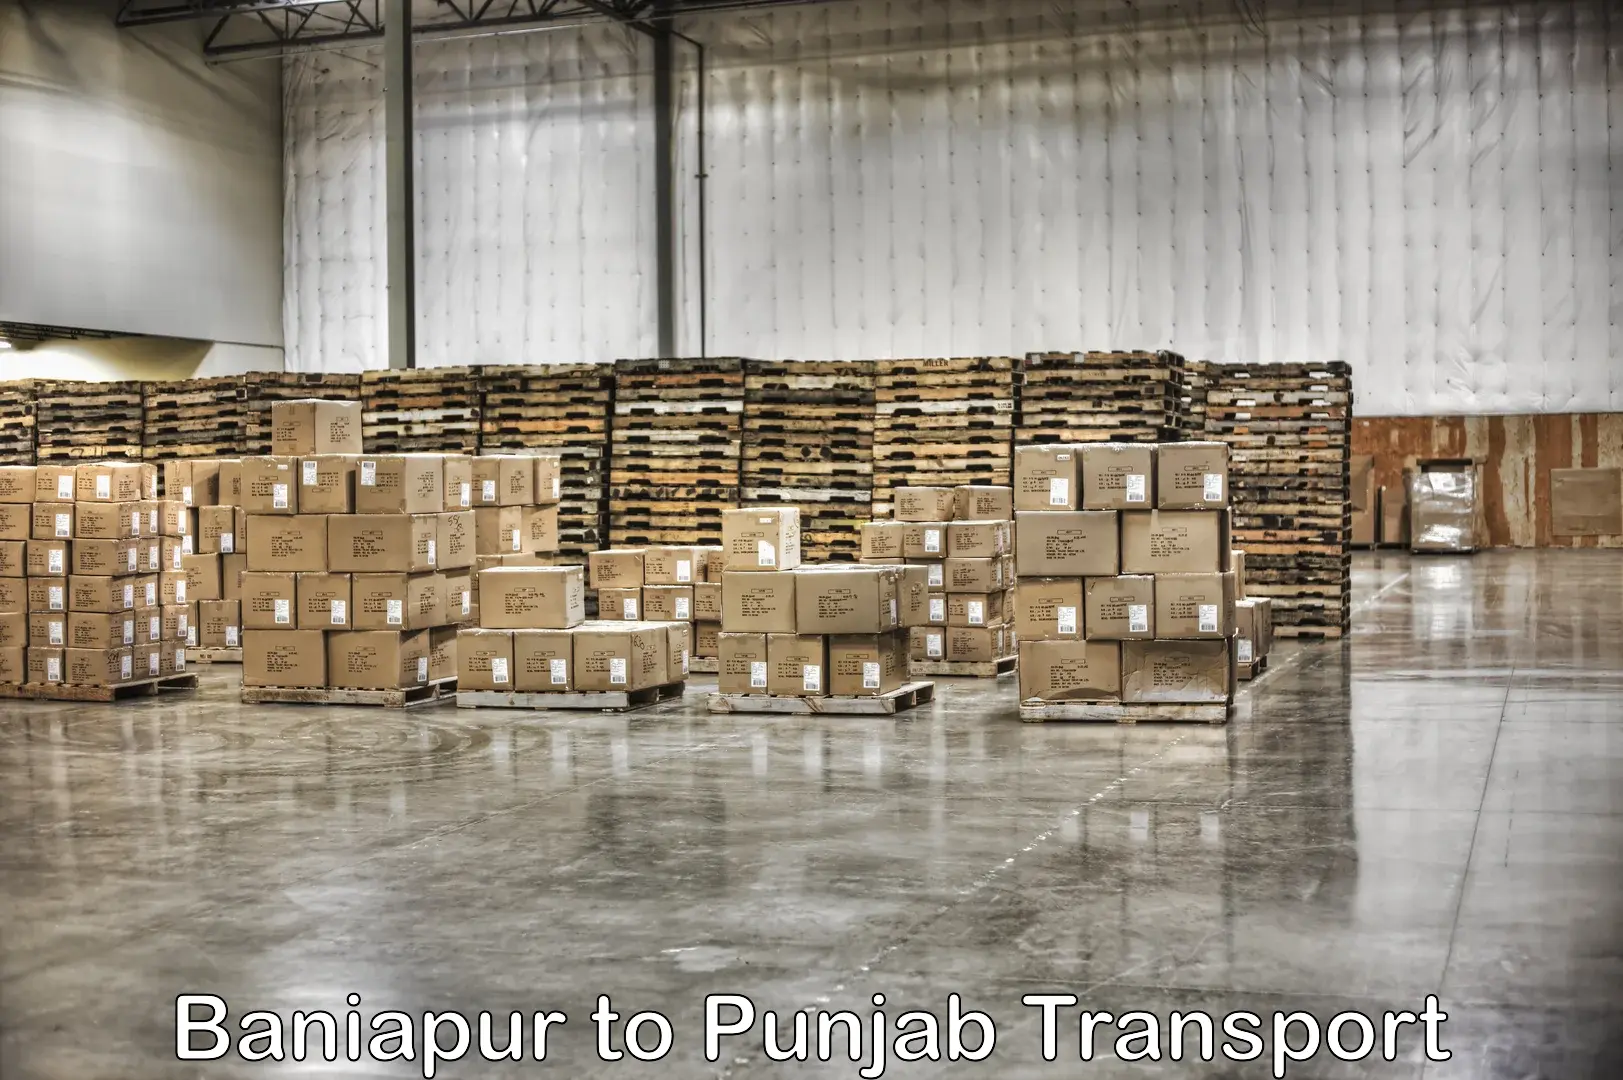 Pick up transport service Baniapur to Punjab